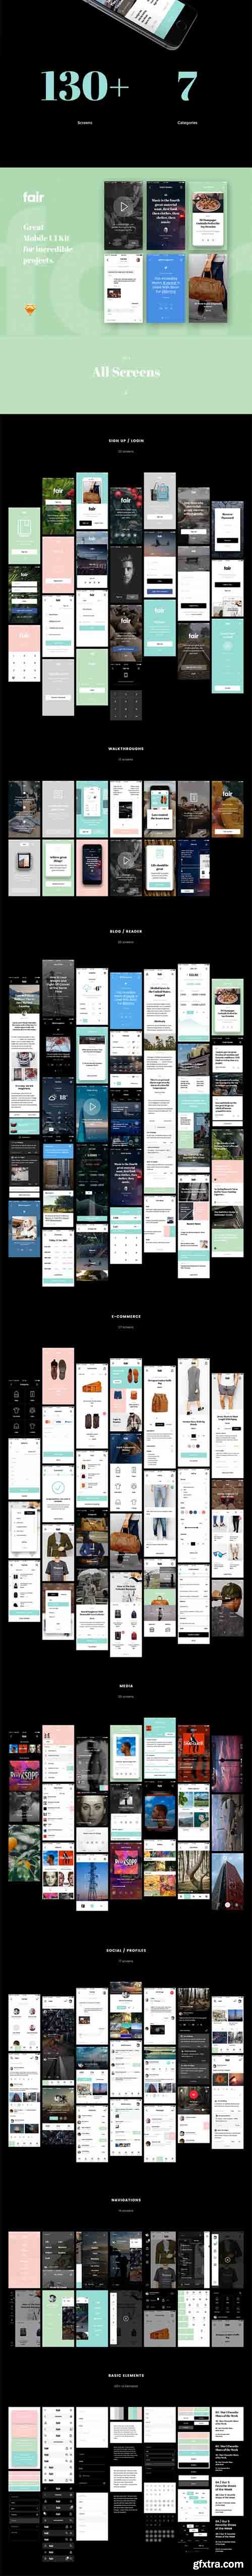 CM - Fair UI Kit (130+ iOS screens) 463370